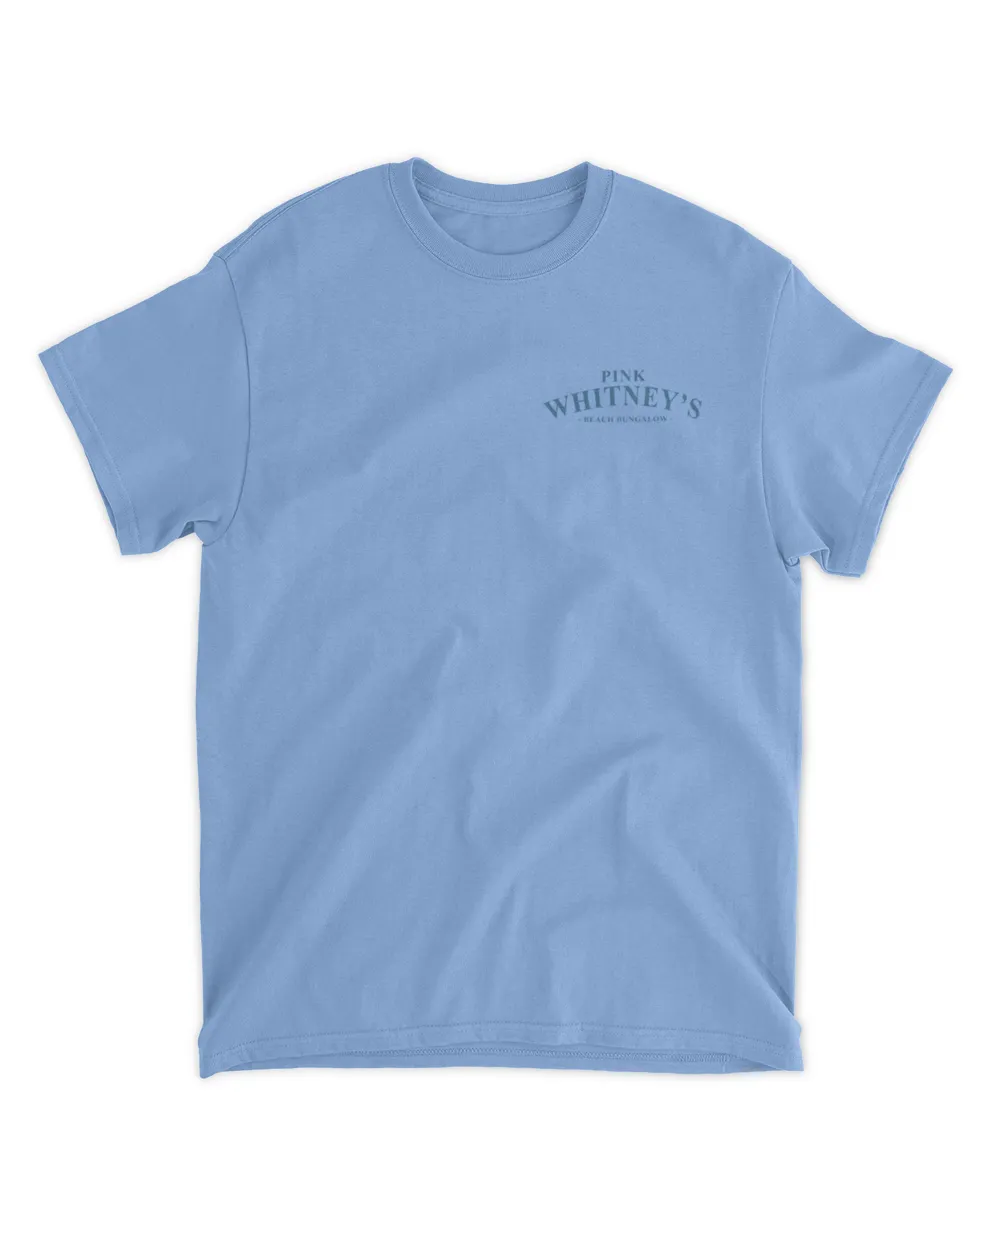 Whitney's Beach Bungalow tee T-Shirt